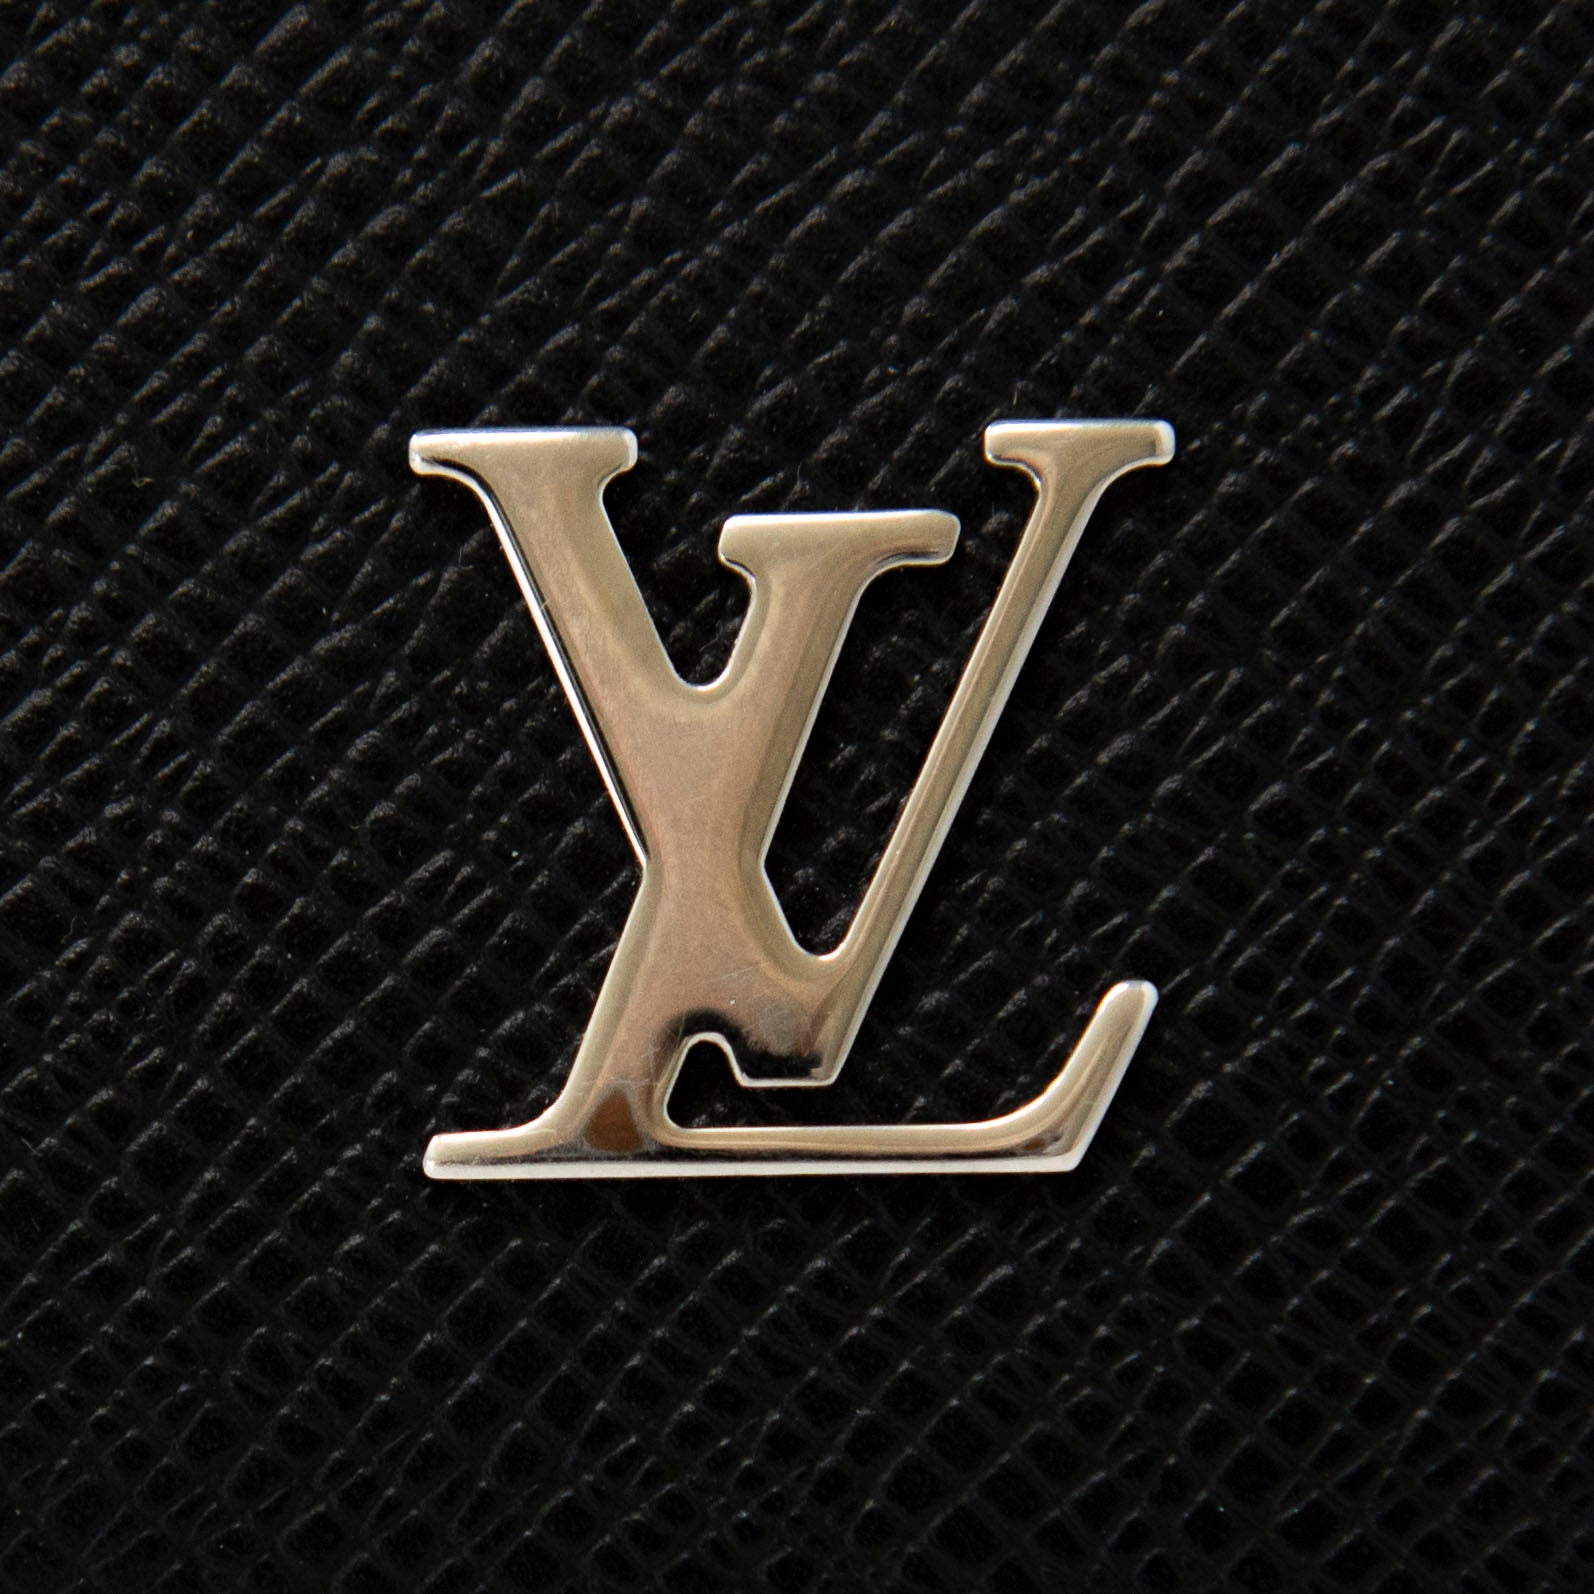 Louis Vuitton Black Taiga Pochette Voyage